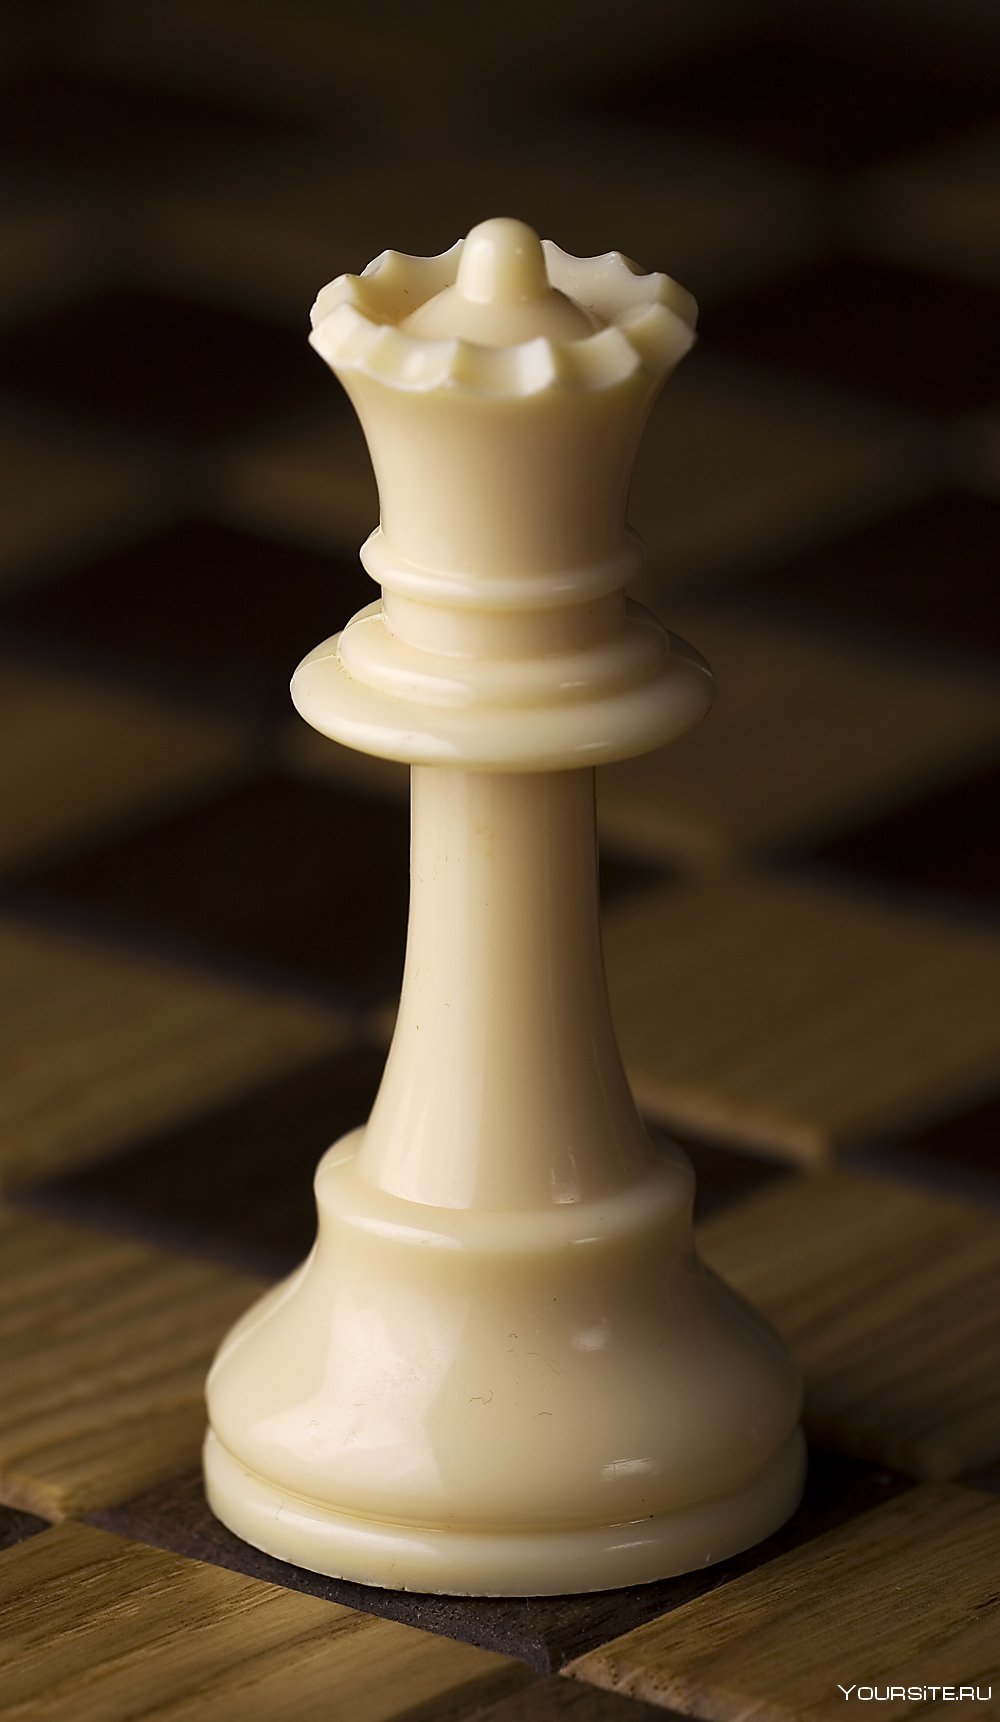 Незабываемые моменты короля до Александра Петрова на шахматной доске